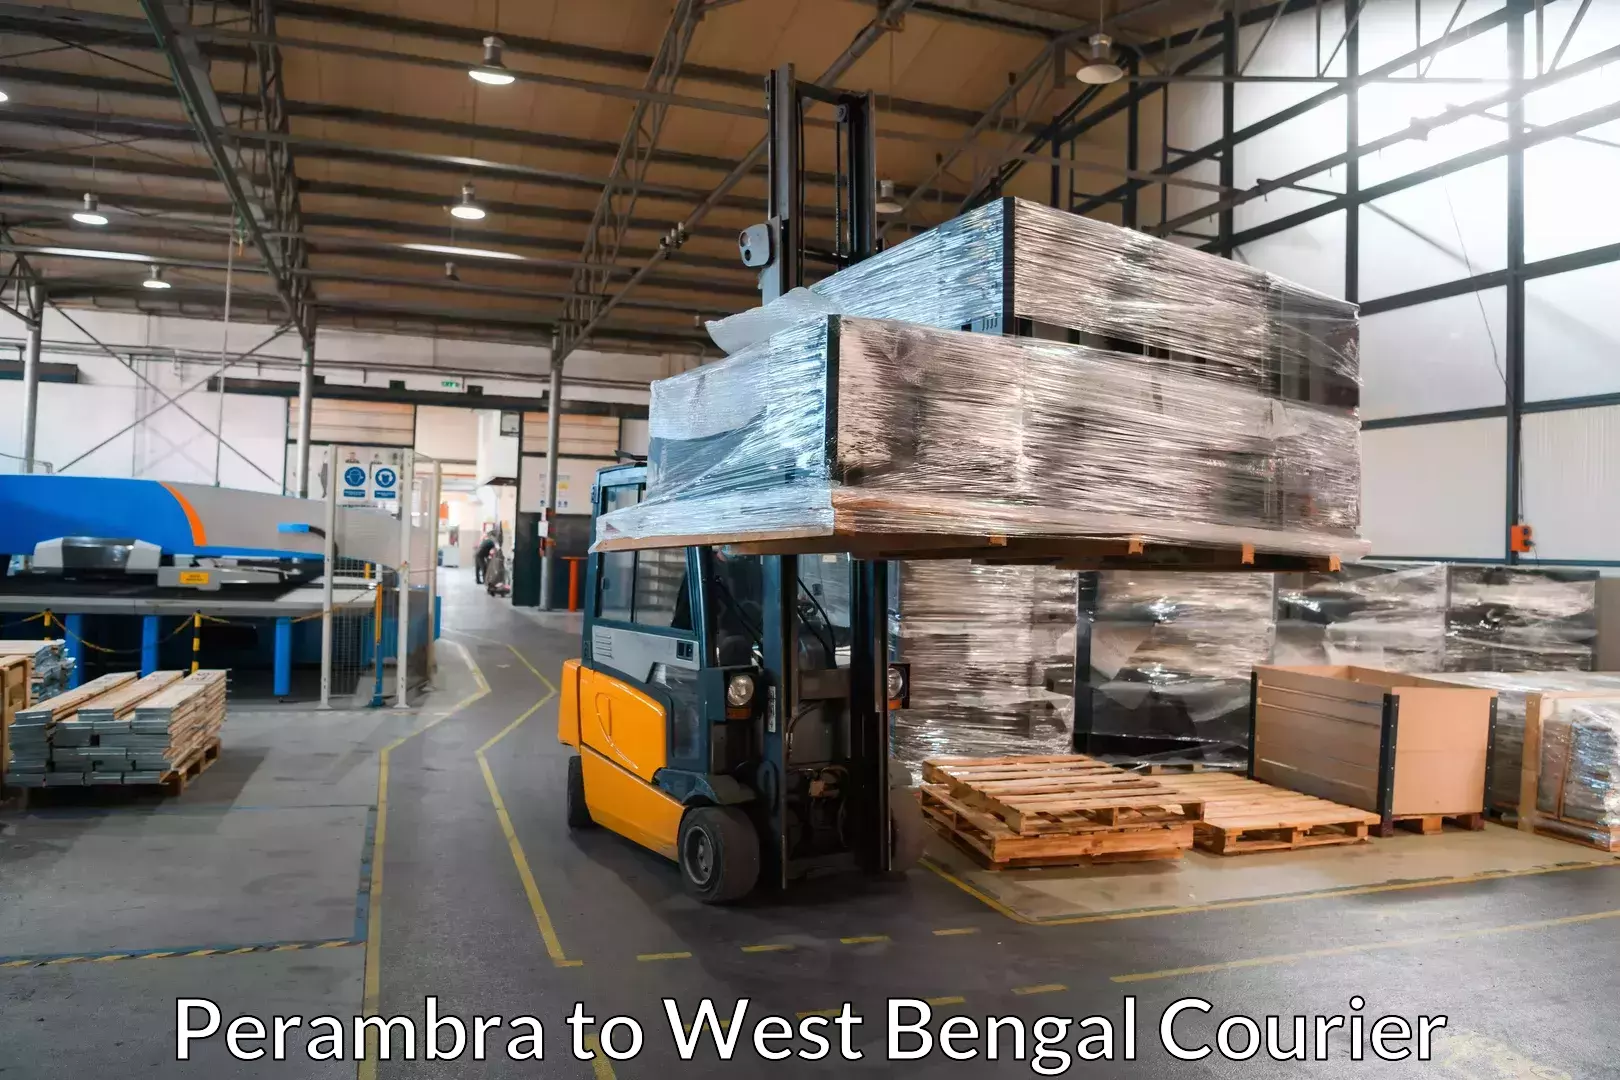 Furniture moving plans Perambra to Raghunathganj